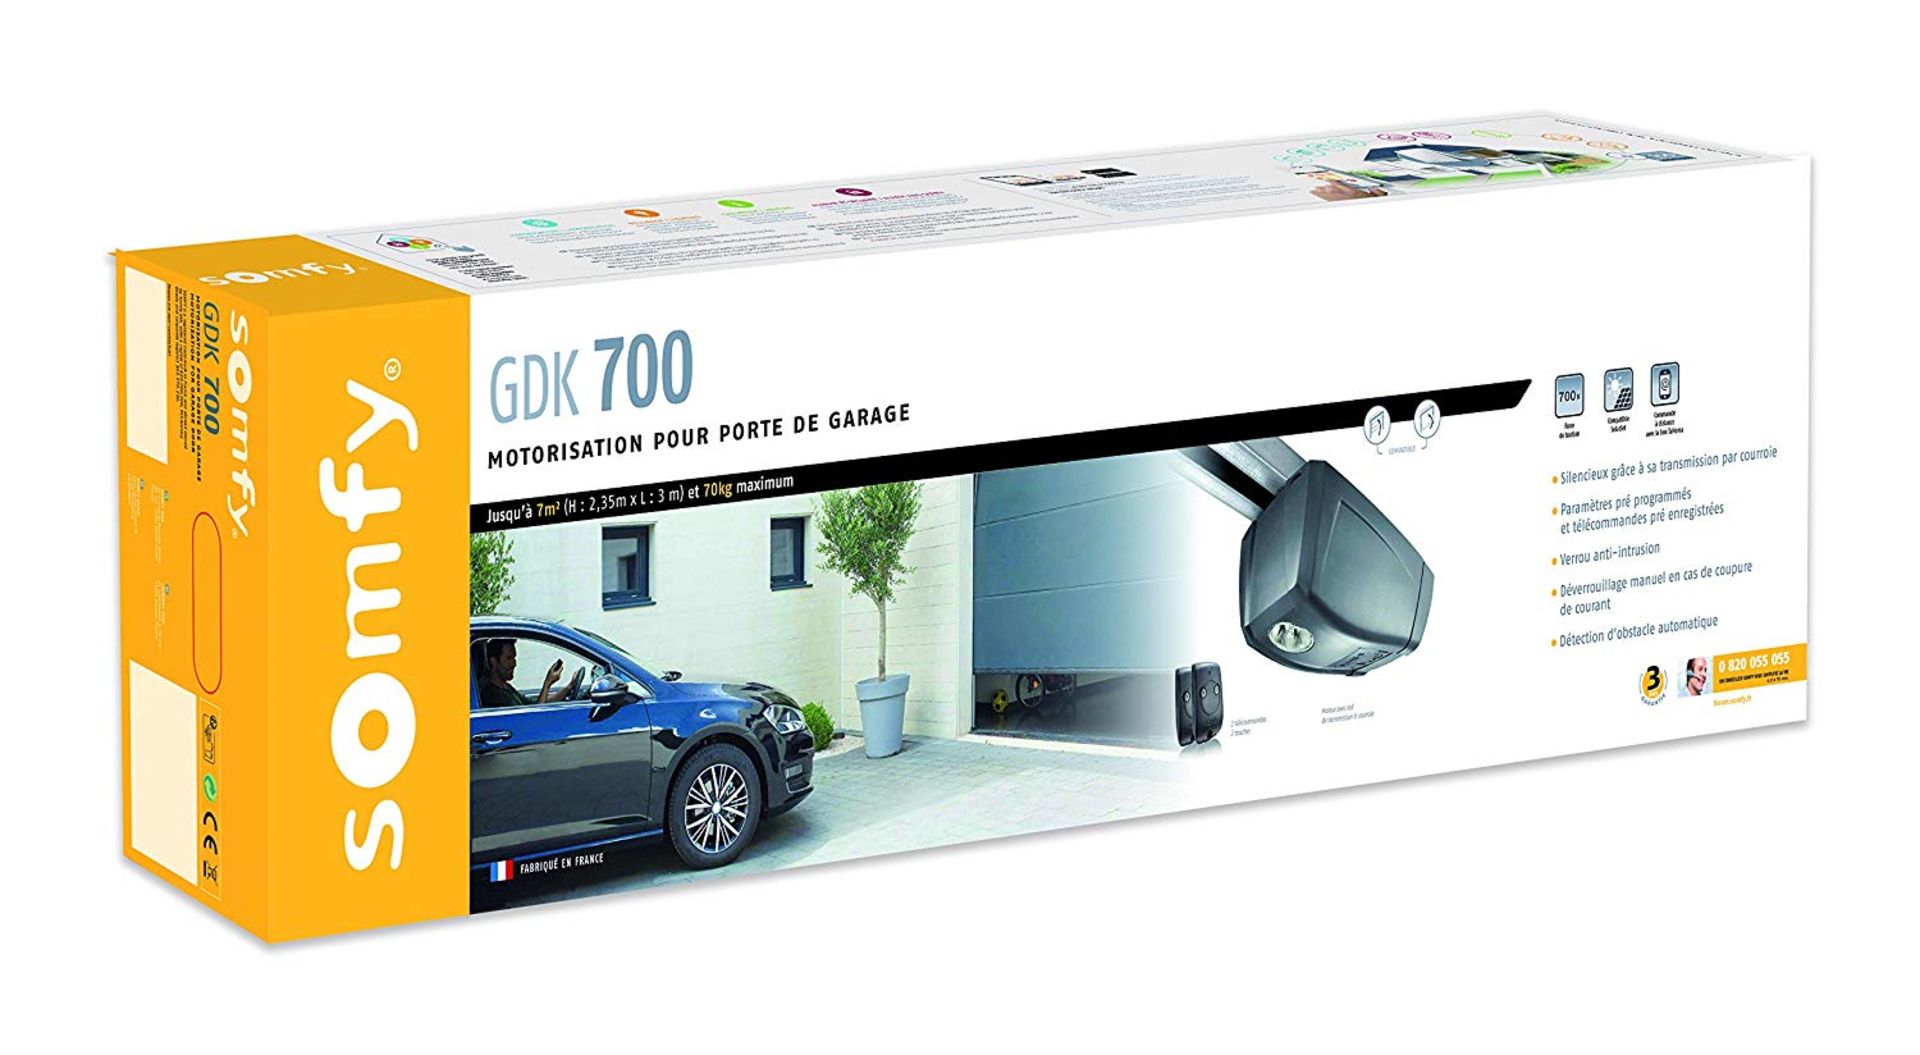 Somfy 2401440 Garage motorised Door Motor GDK 700 RRP £379.99